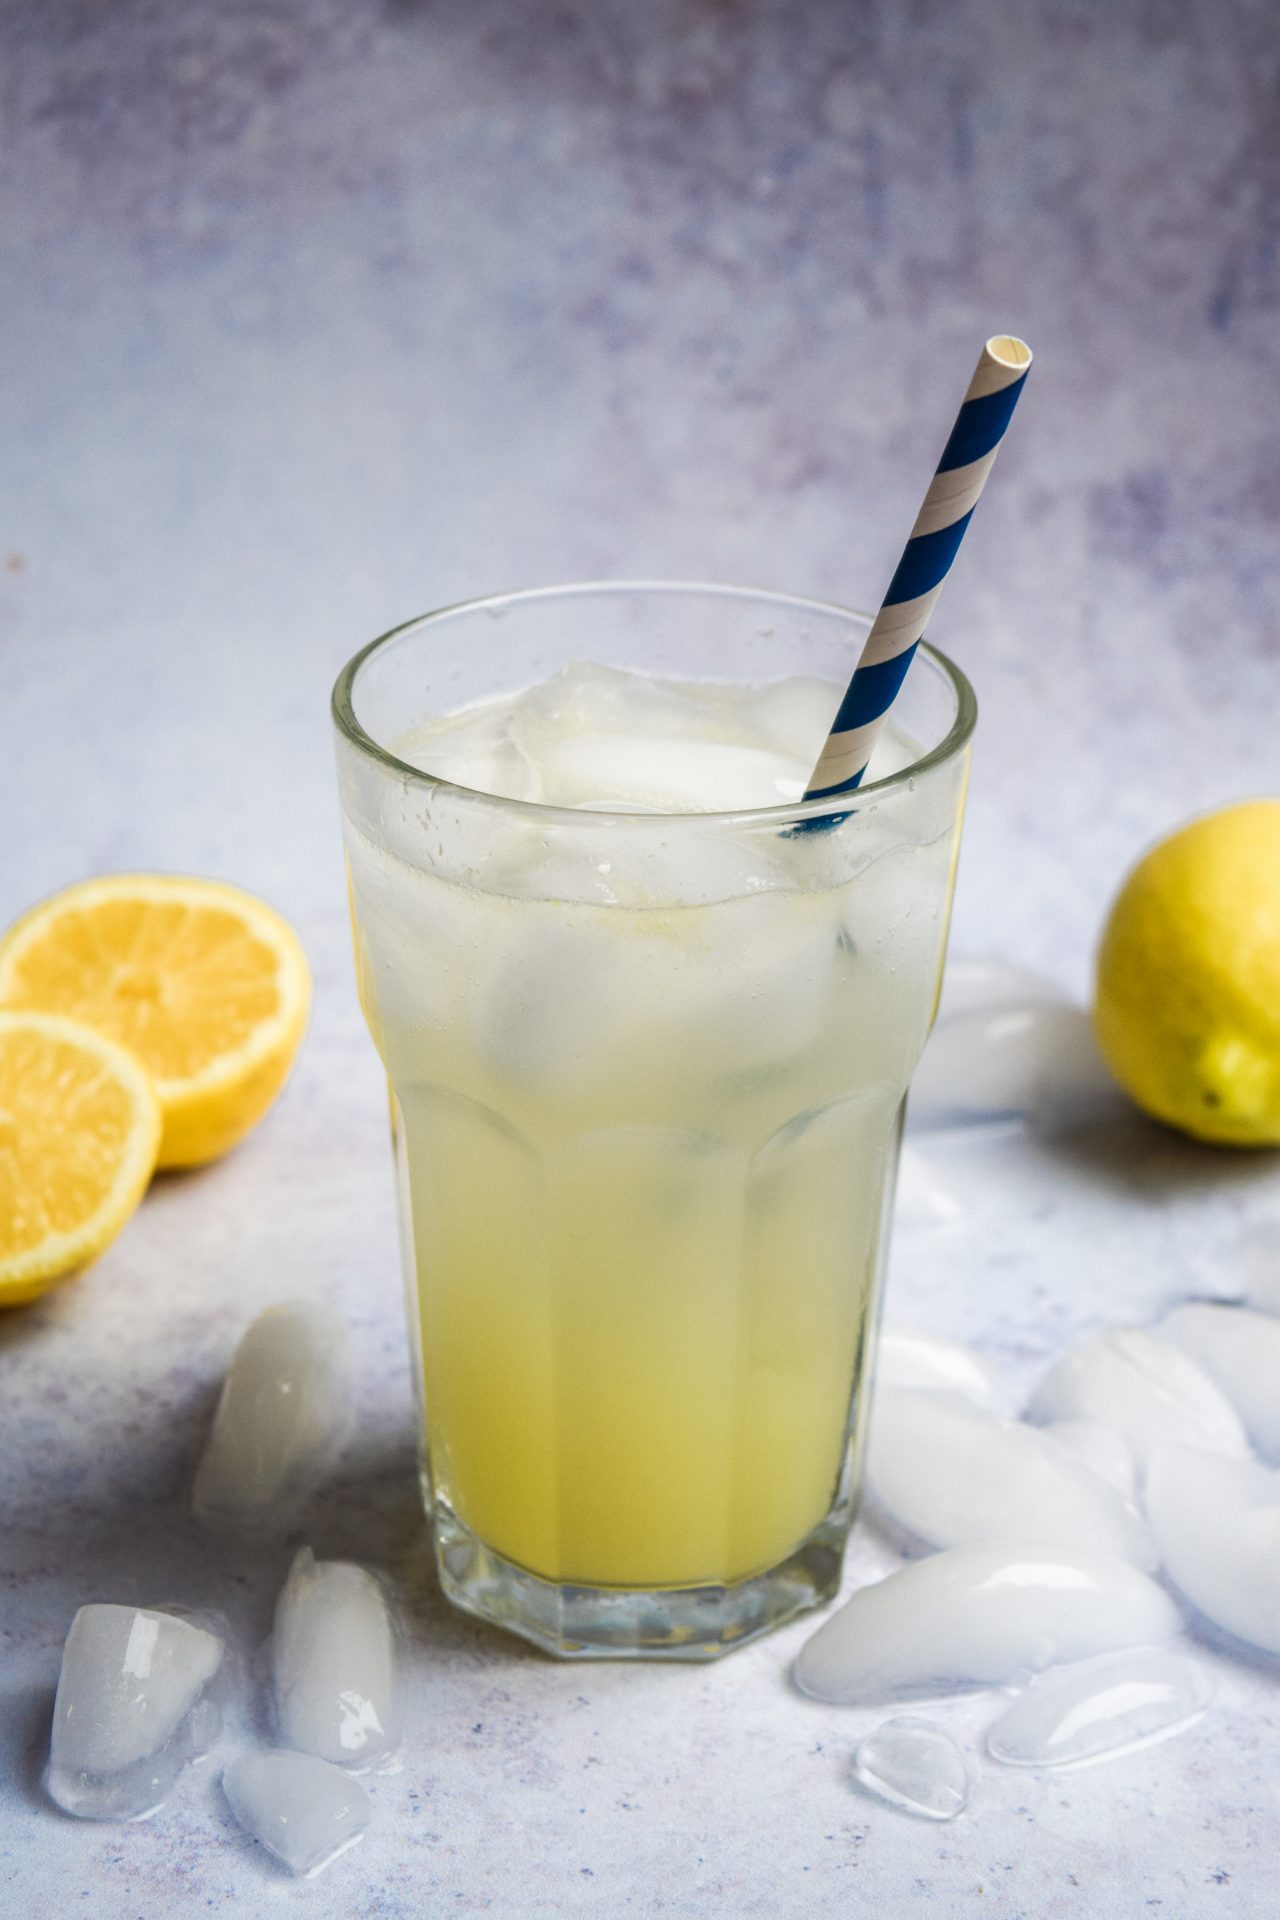 How To Make Even Better Homemade Lemonade | Rachel Phipps